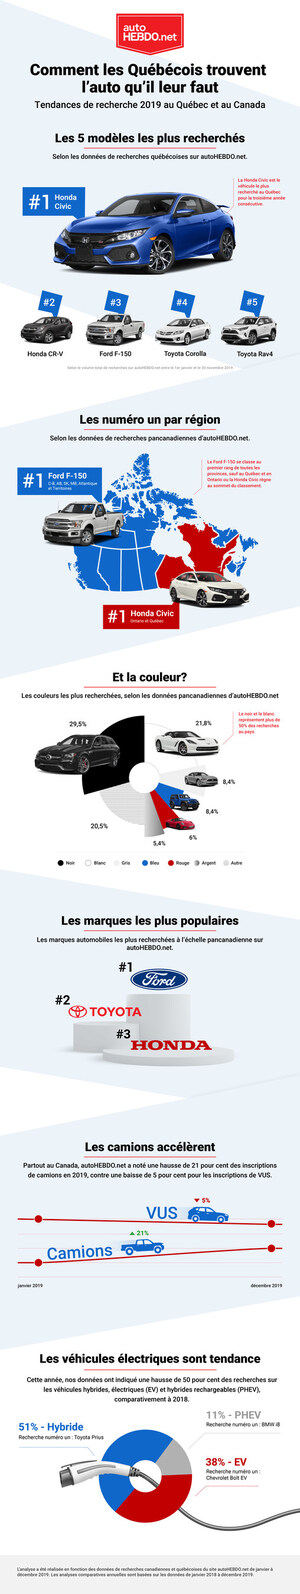 Les acheteurs de voitures Québécois ont l'esprit pratique, selon les données de recherches nationales